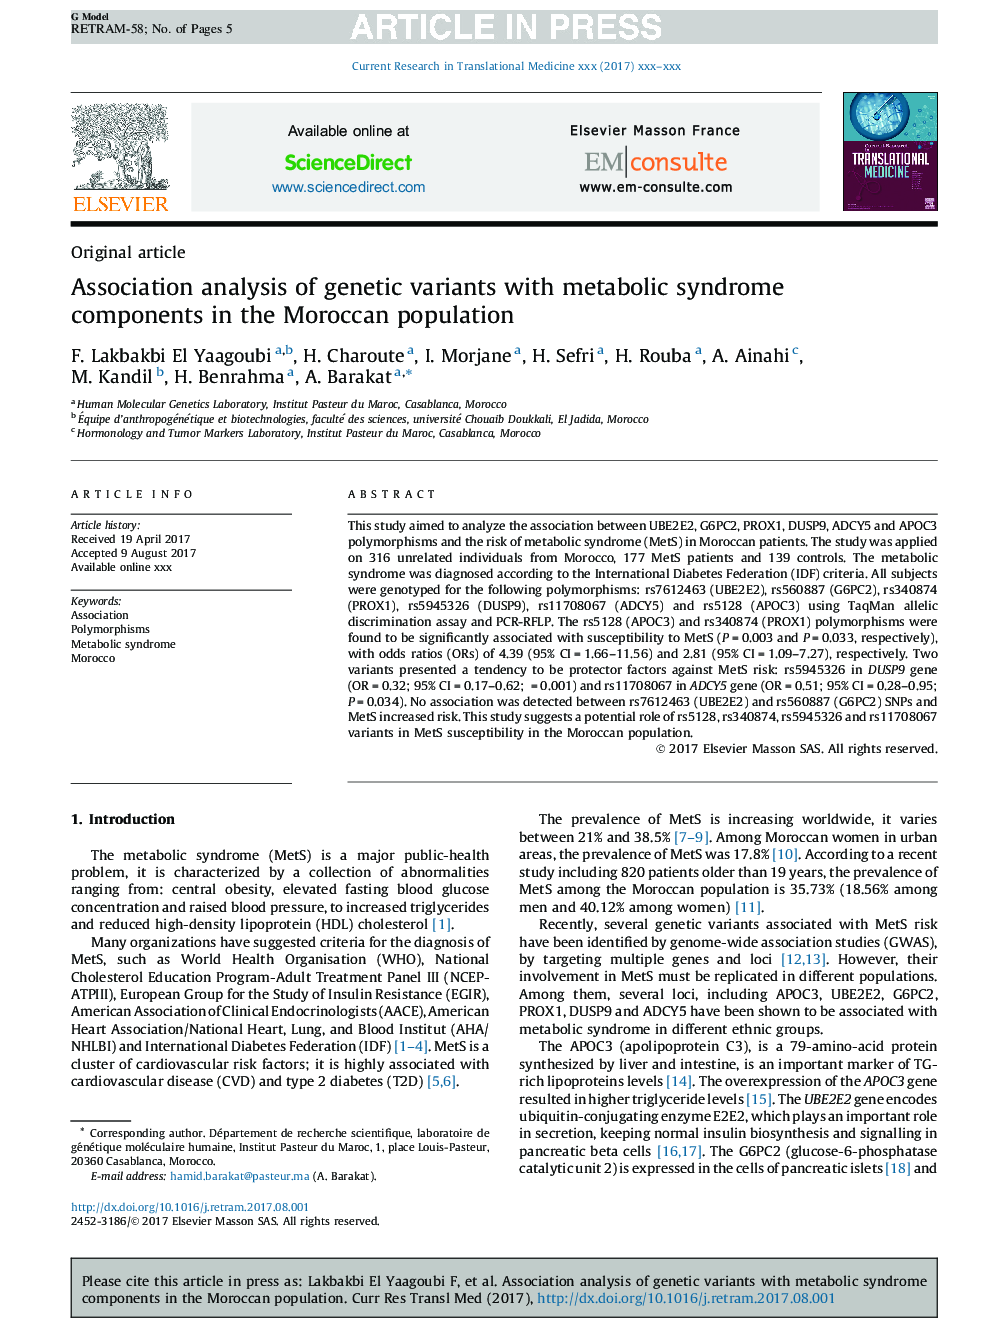 تجزیه و تحلیل انجمن از انواع ژنتیکی با اجزای سندرم متابولیک در جمعیت مراکش 